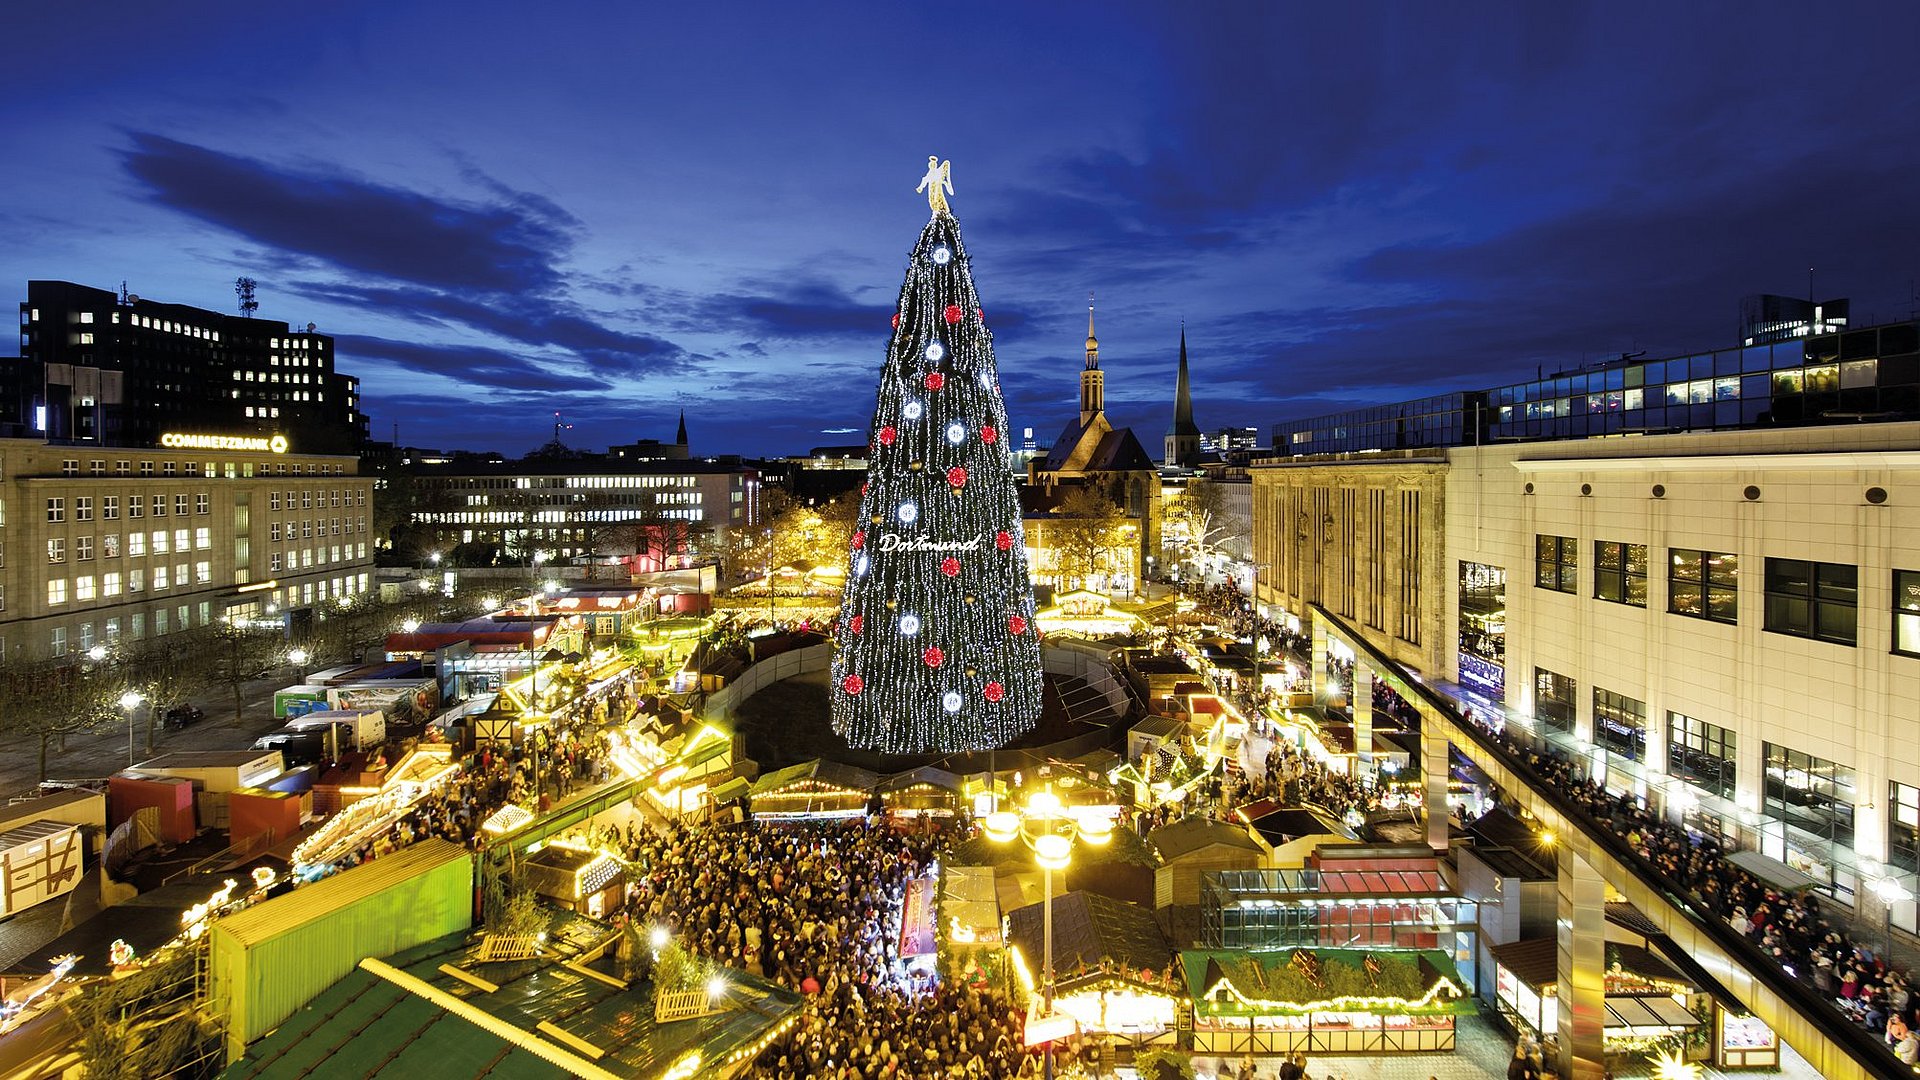 Este árbol de Navidad se convierte en el centro de una ciudad navideña que promete "una experiencia para todos" / (Fuente: https://visit.dortmund.de/)